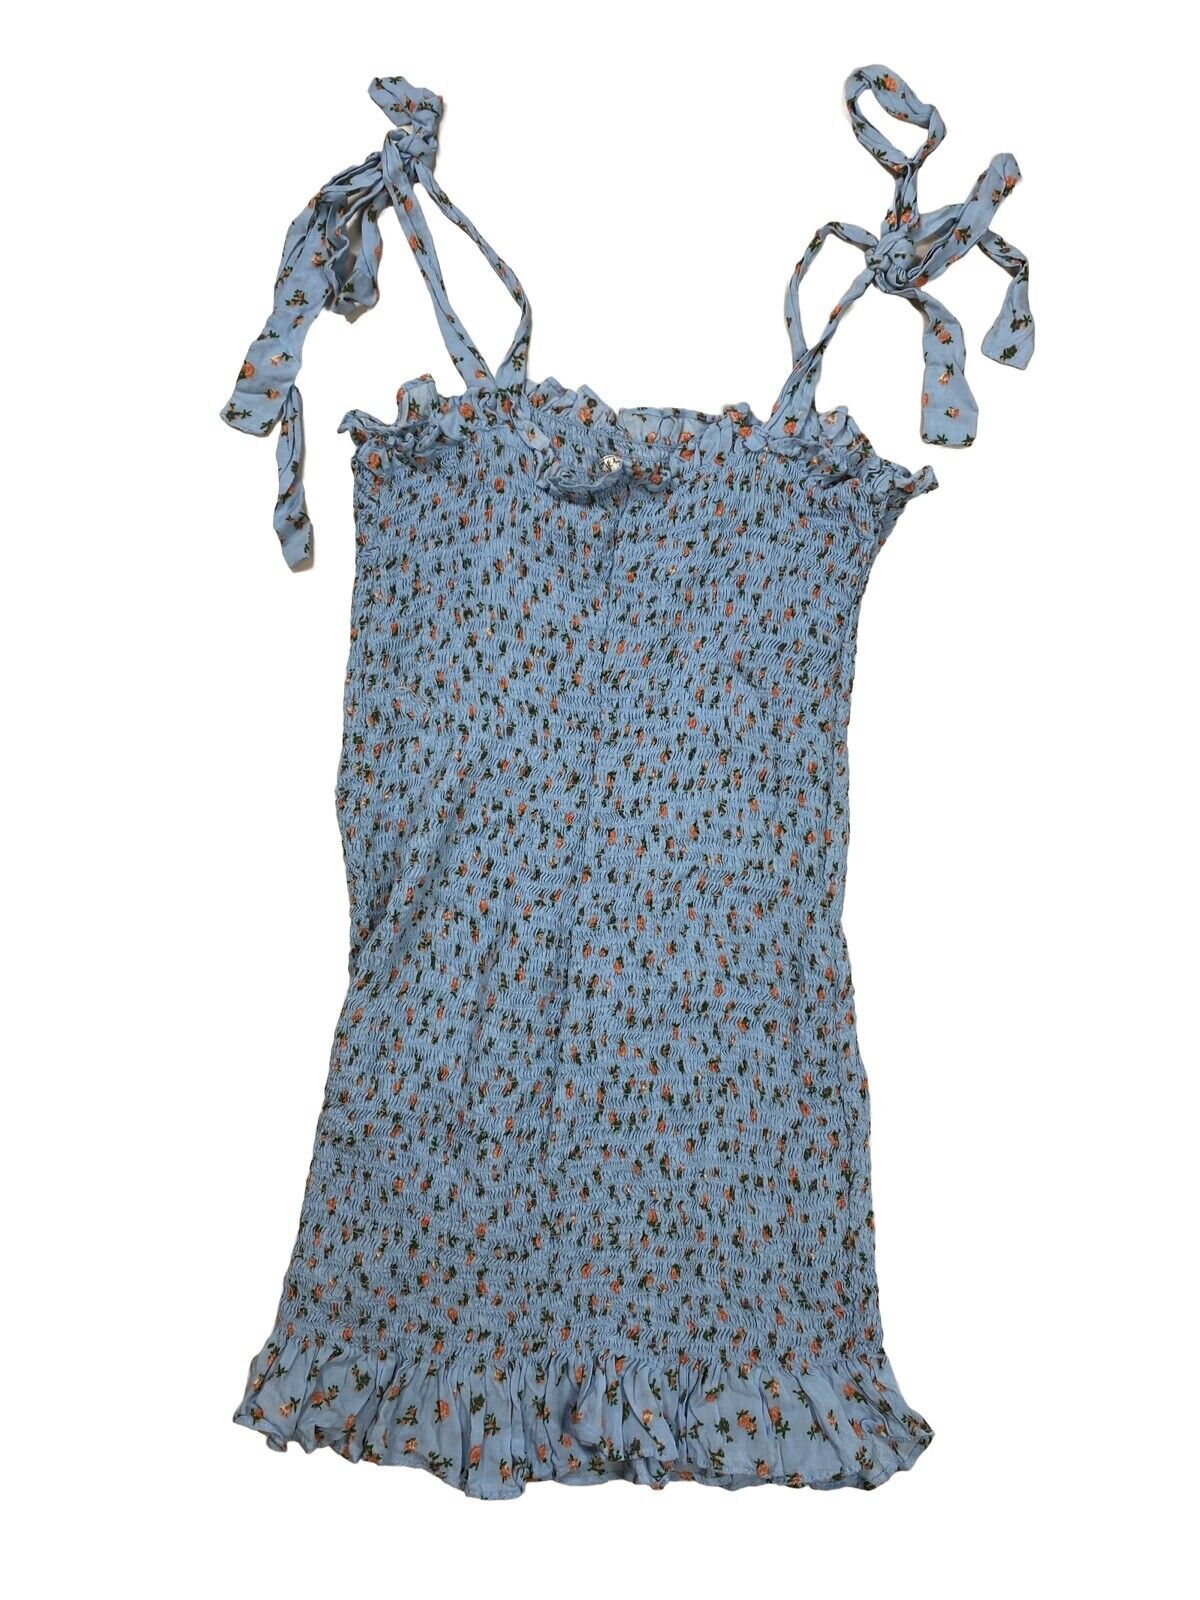 Intimately Free PeopleVestido ajustado corto floral azul para mujer - M